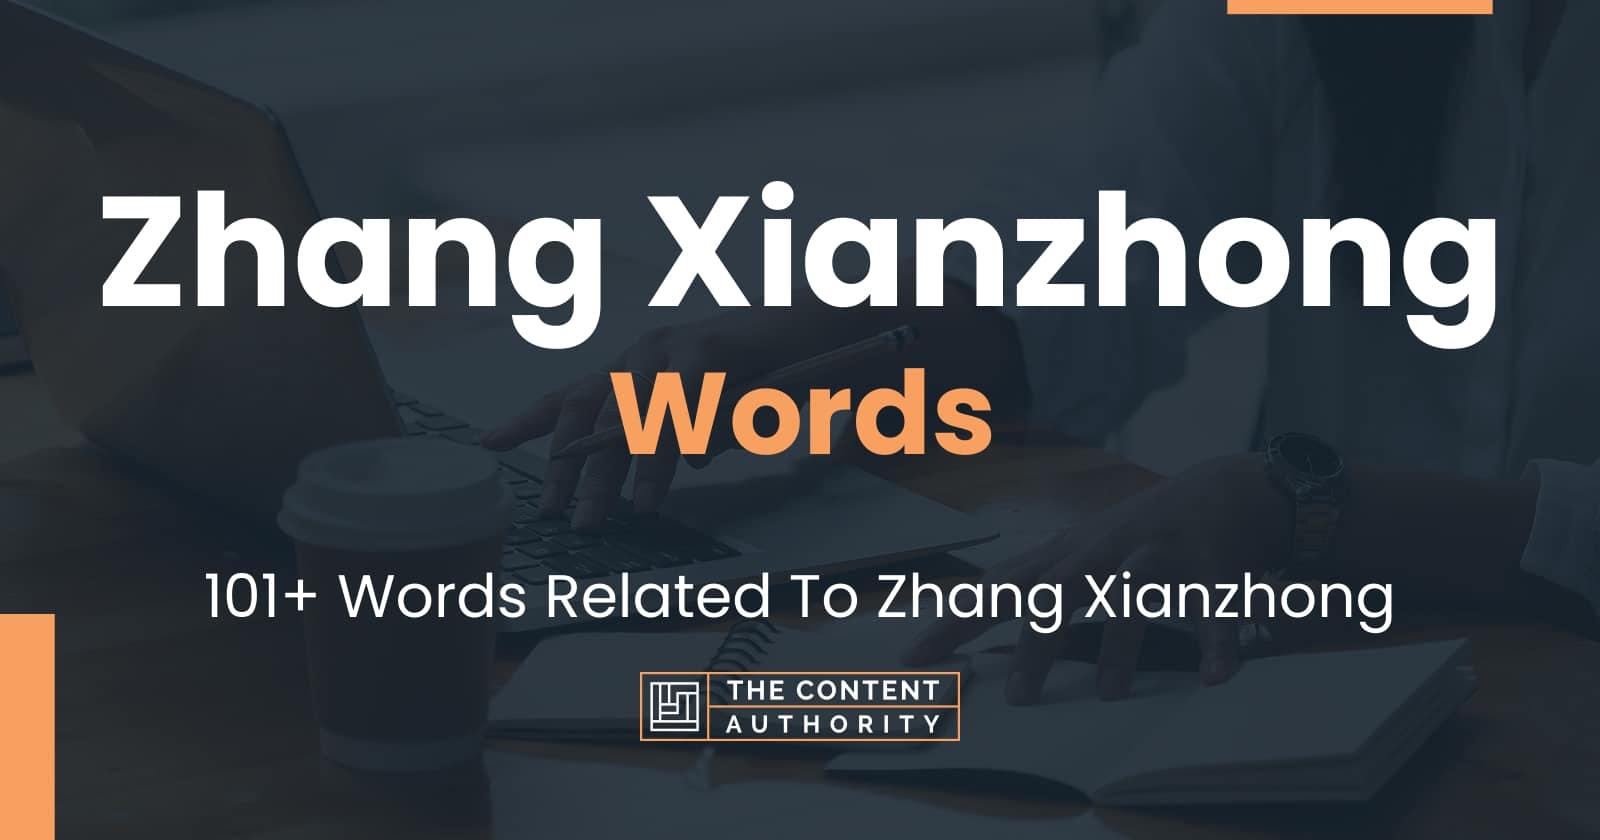 Zhang Xianzhong Words - 101+ Words Related To Zhang Xianzhong